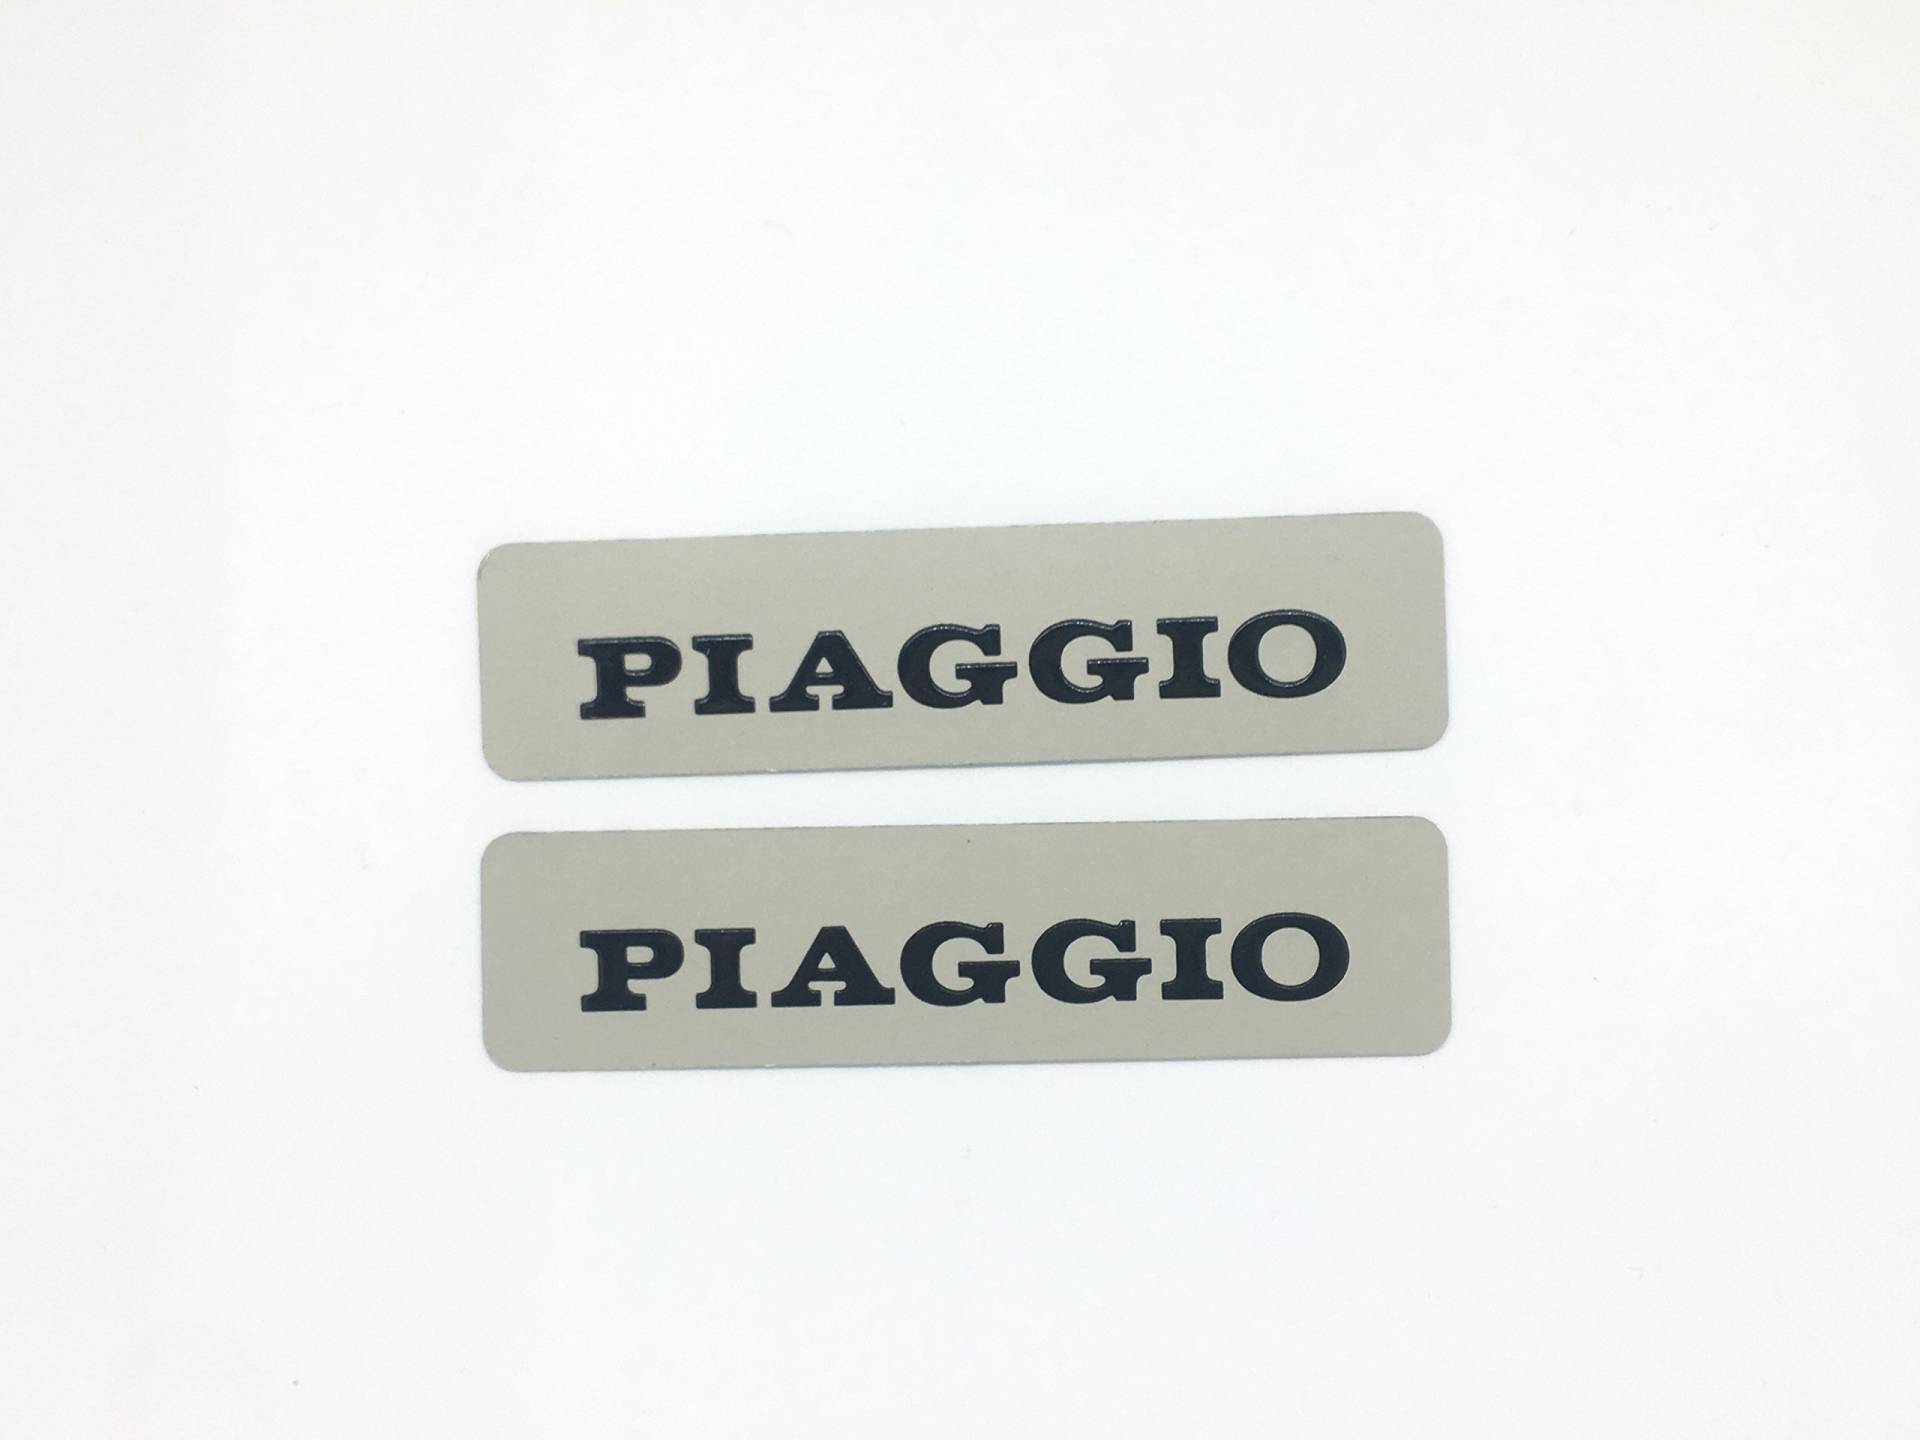 Ein Paar Aufkleber für Metalltank für Piaggio Ciao Si Bravo, 11,5 x 2,8 cm. von PIAGGIO